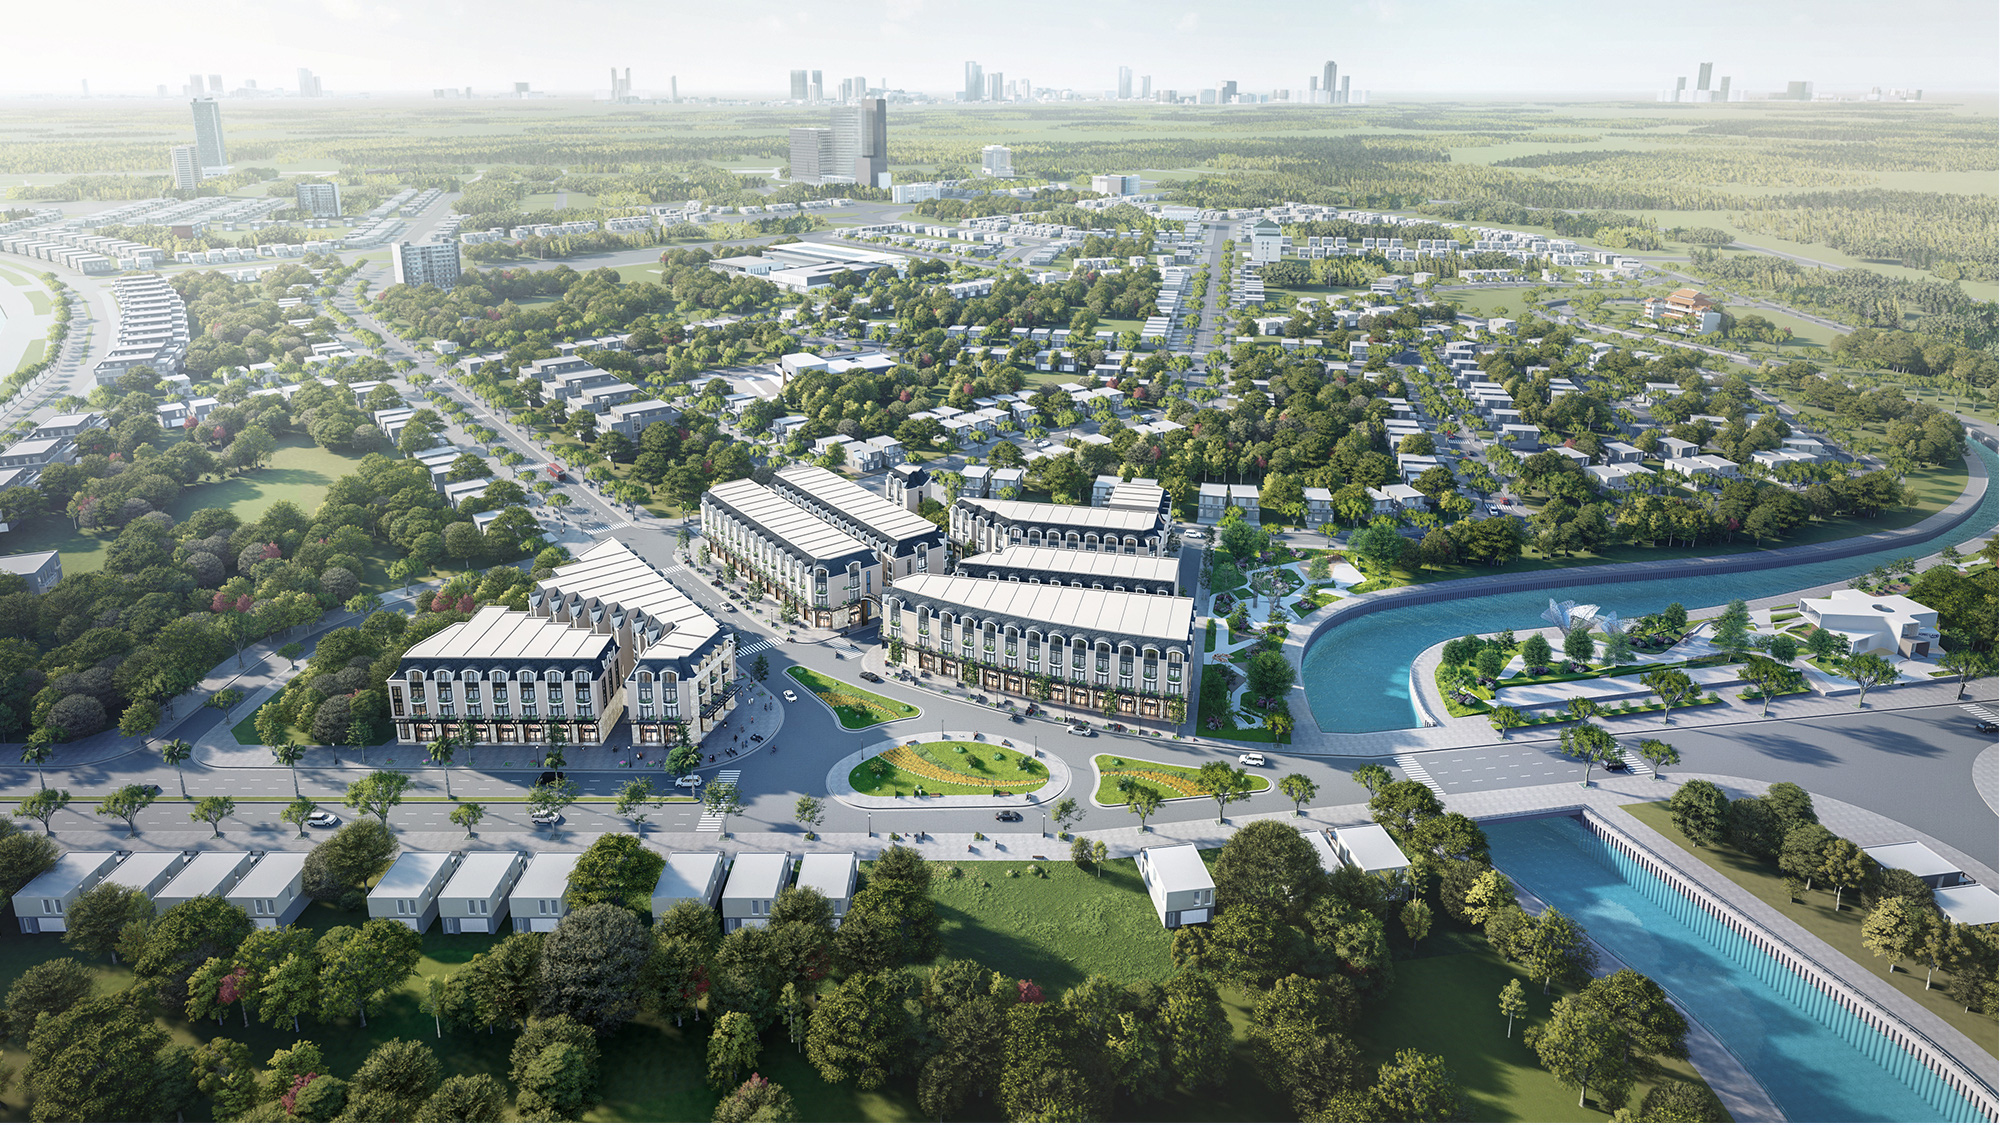 Gotec Land - Đề ra chiến lược nhà phát triển bất động sản mang đến giá trị bền vững - Ảnh 15.